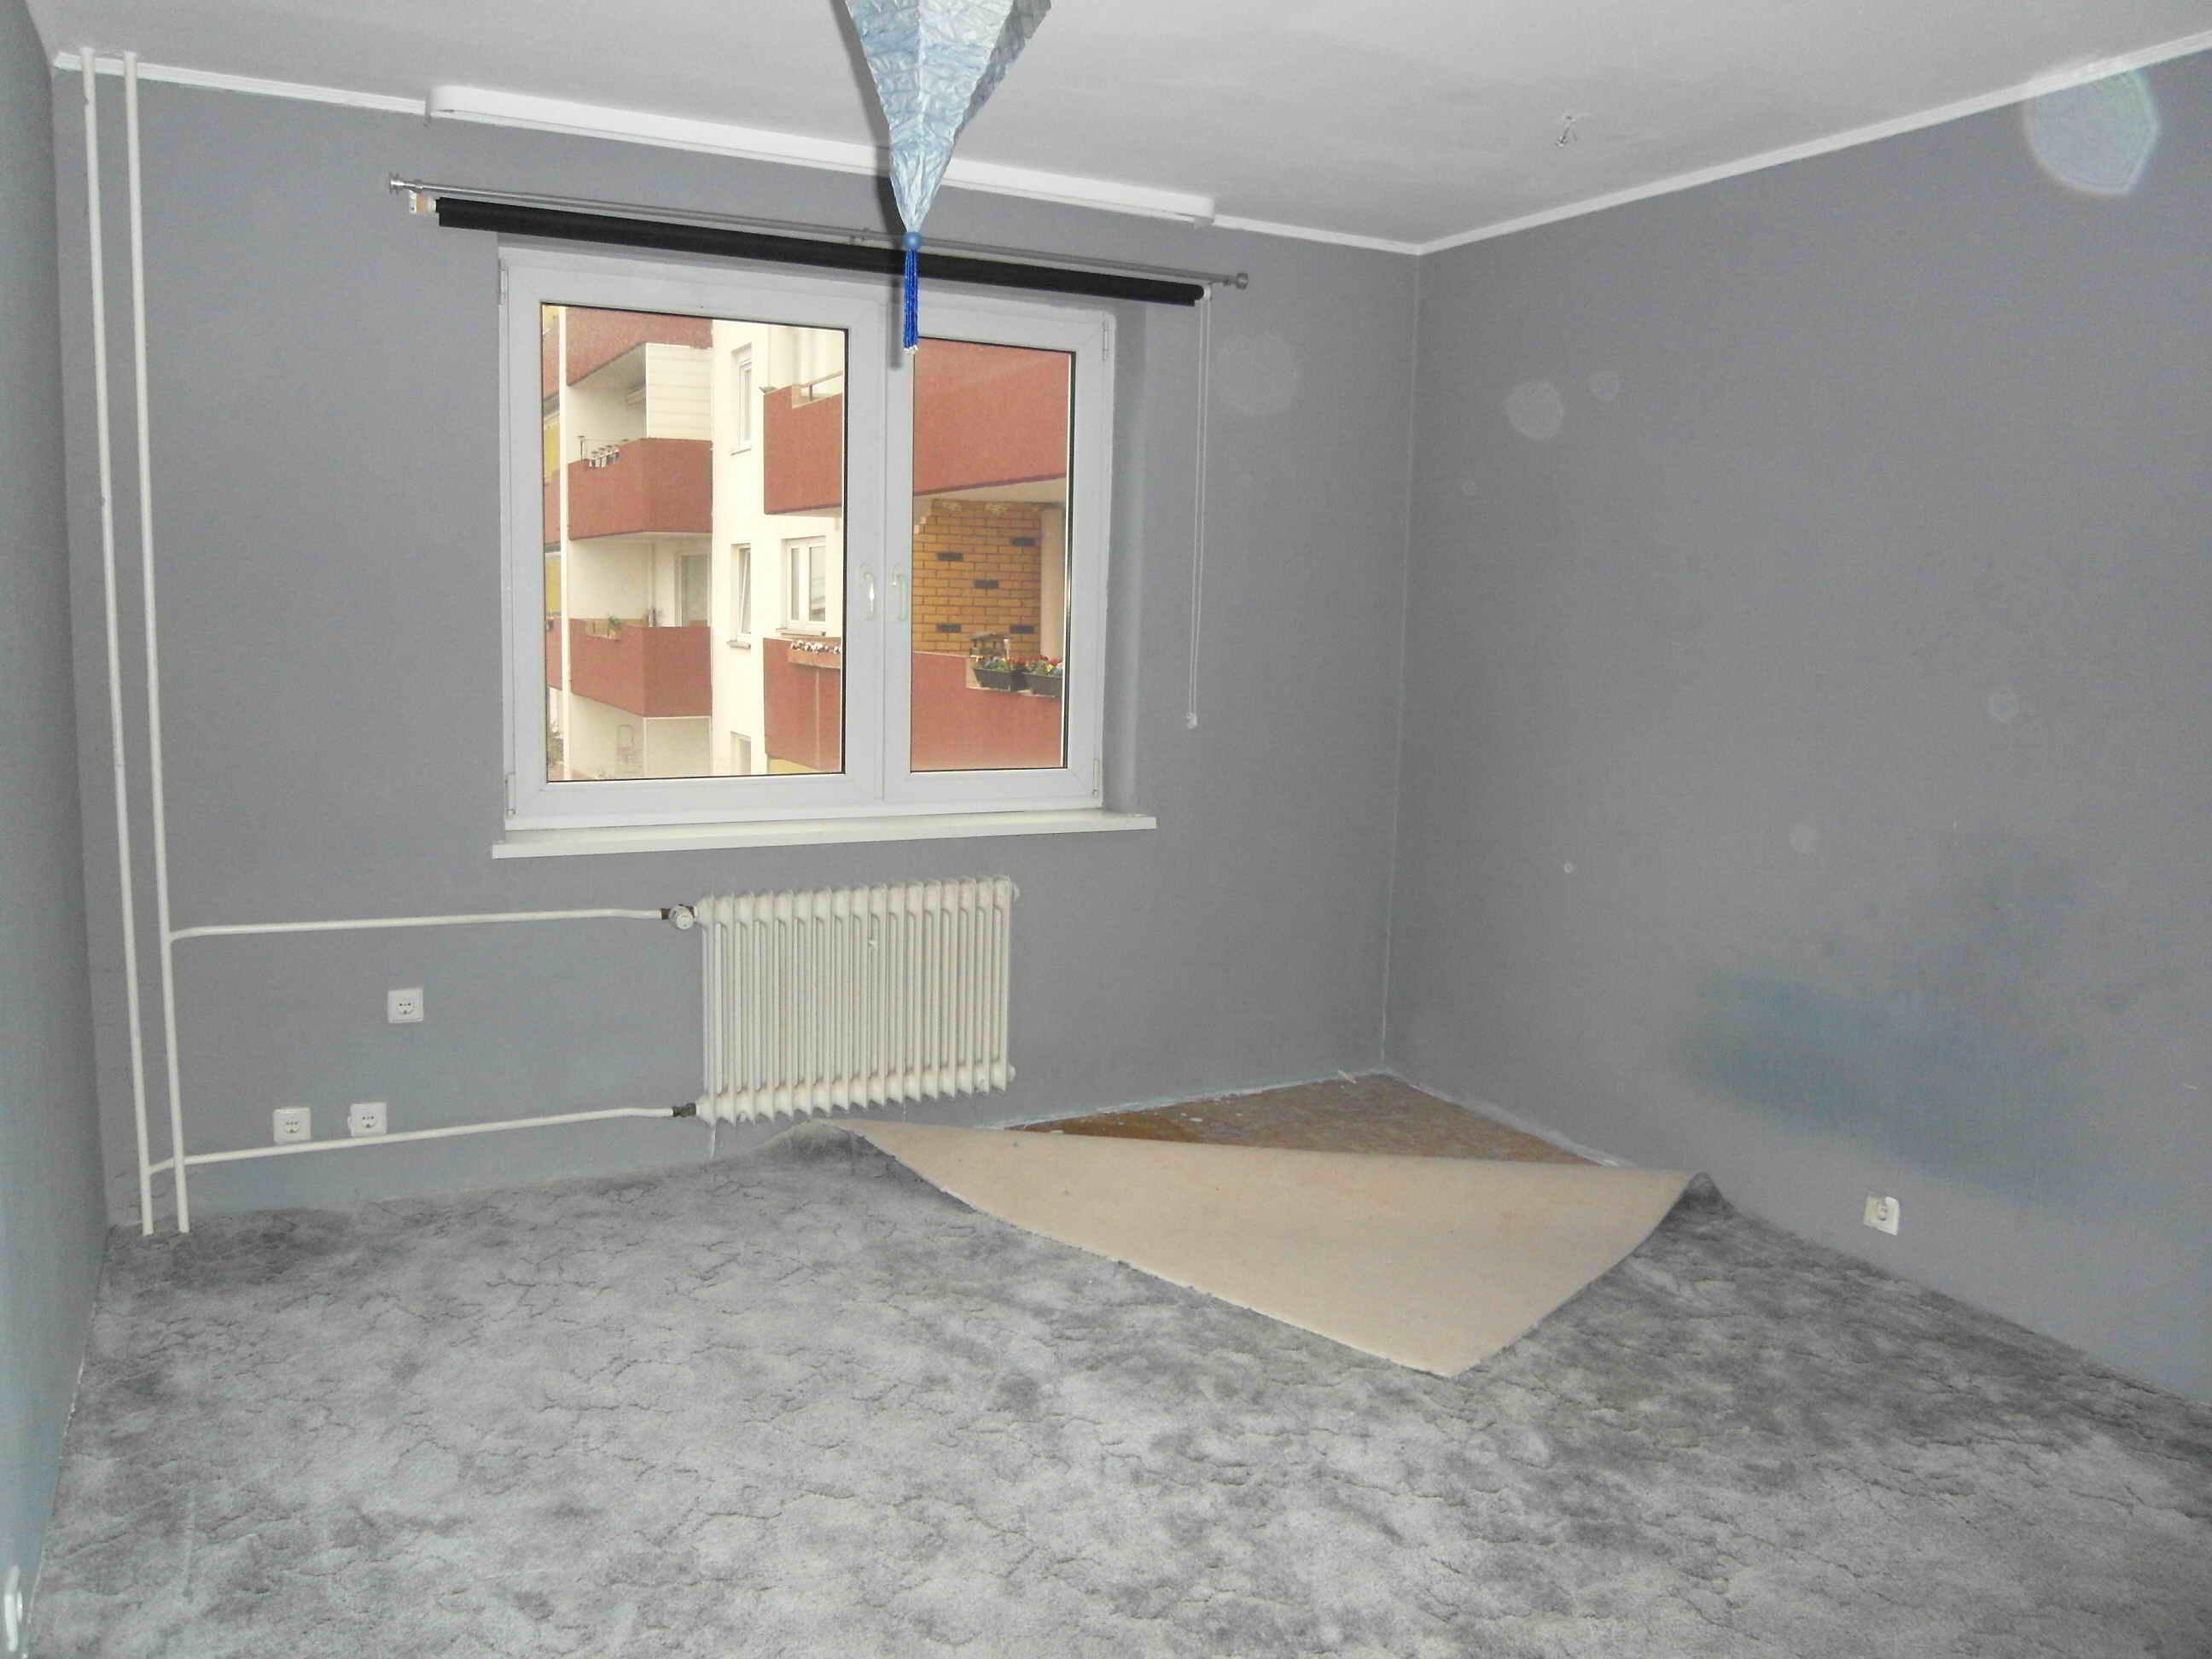 Schlafzimmer vorher #teppich #hängeleuchte #grauewandfarbe ©artenstein